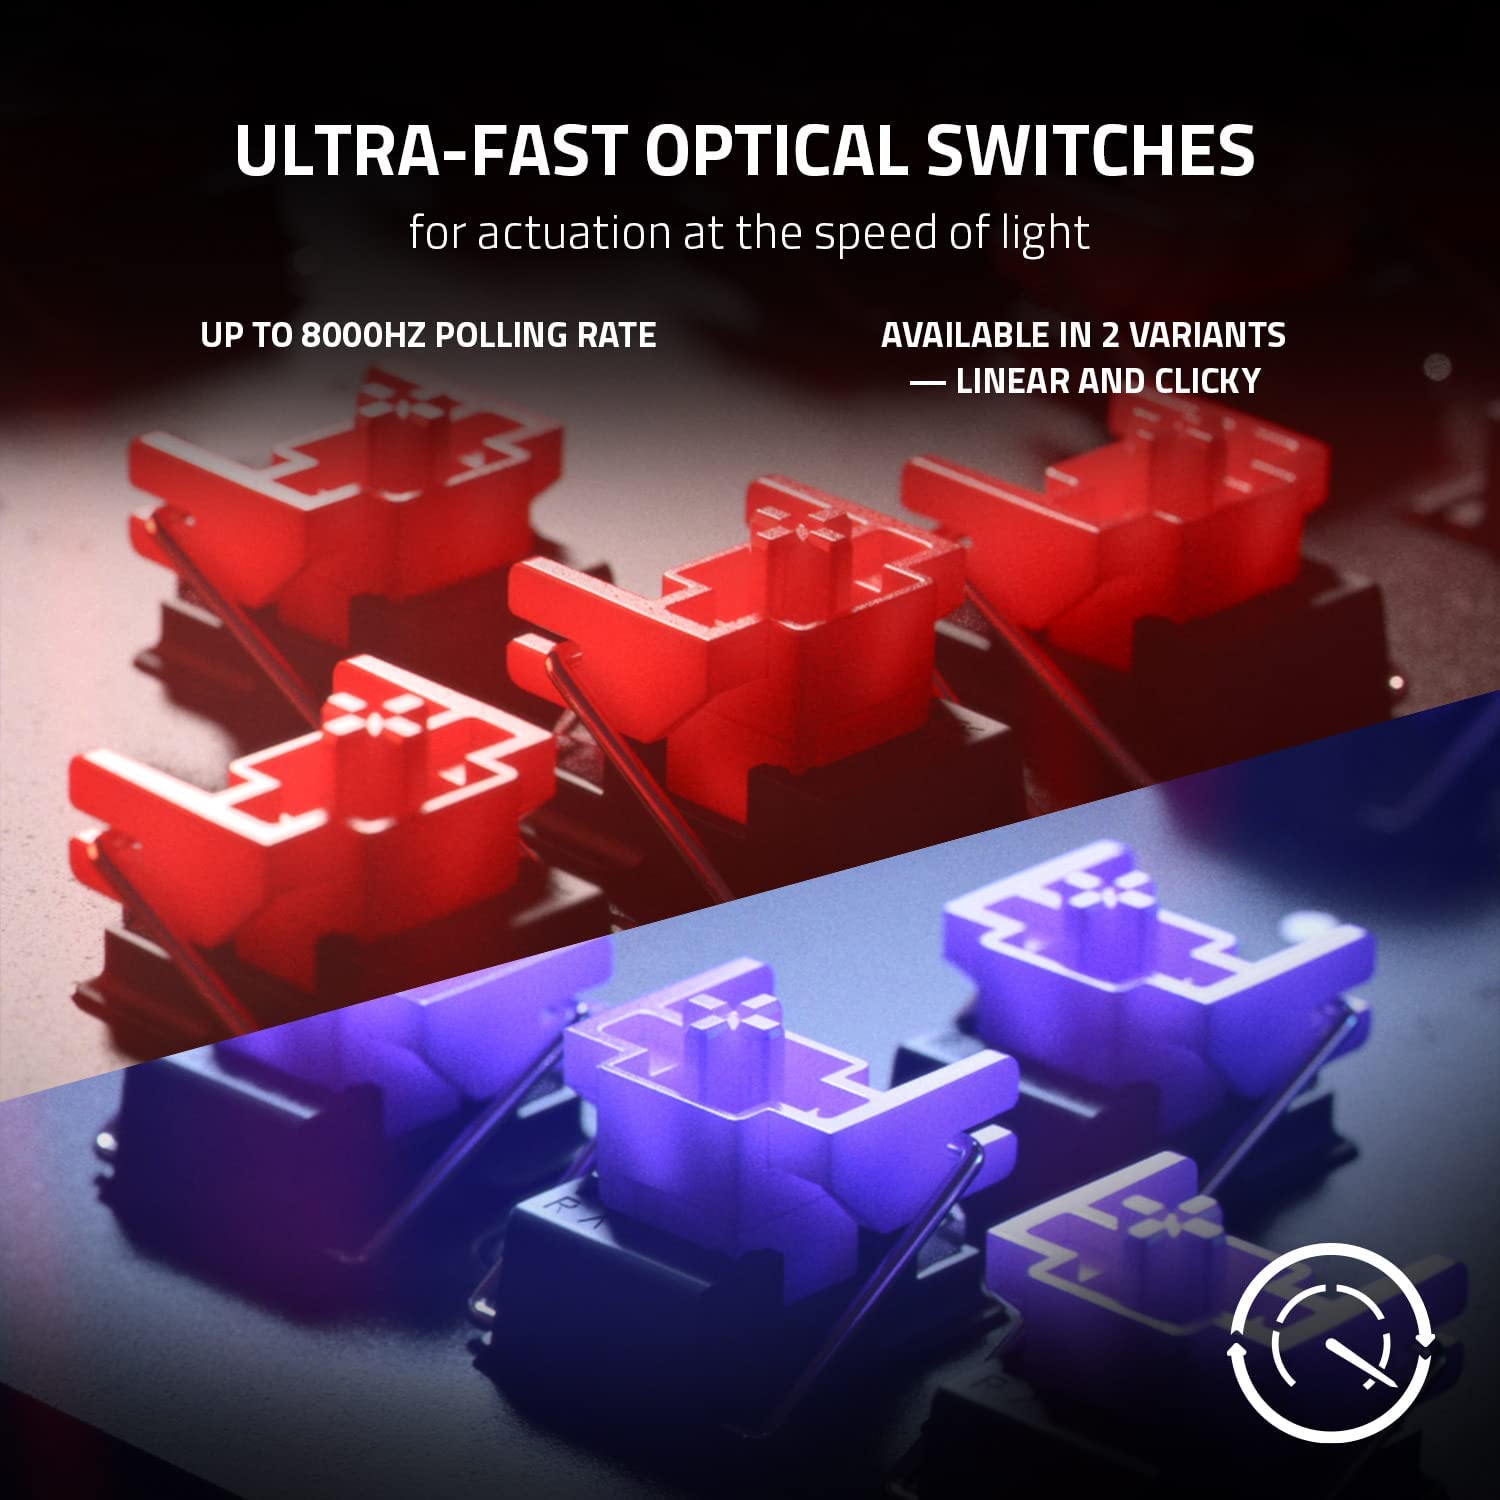 Razer Huntsman V2 Optical Gaming Keyboard: Fastest Clicky Optical Swit –  Digital P Enterprises